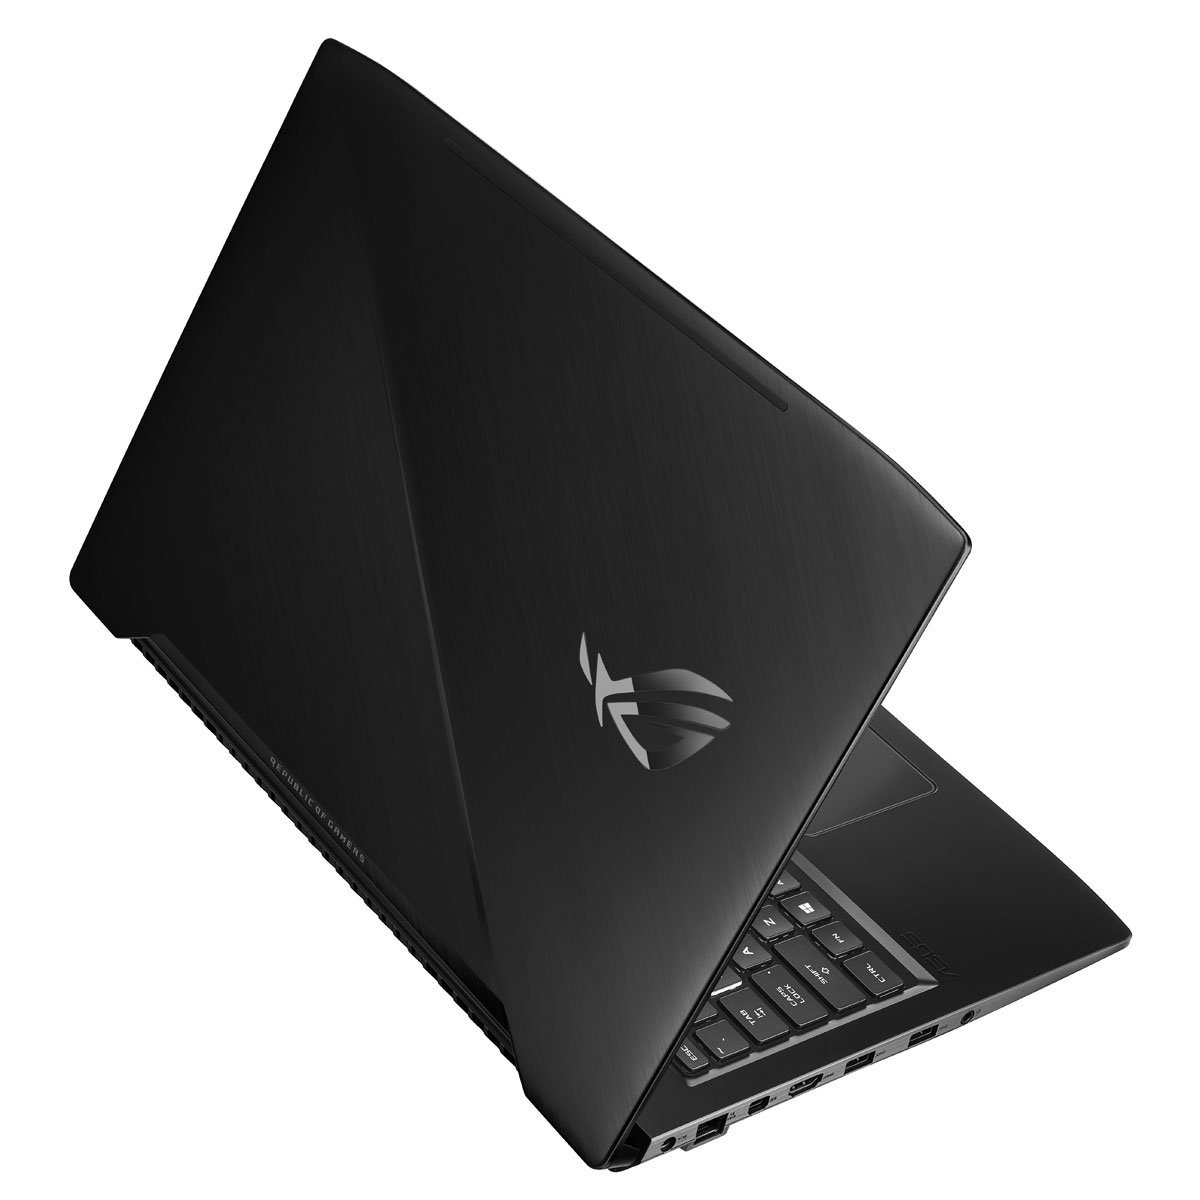 Laptop Gamer Asus Rog Gl503Vd-Fy276T